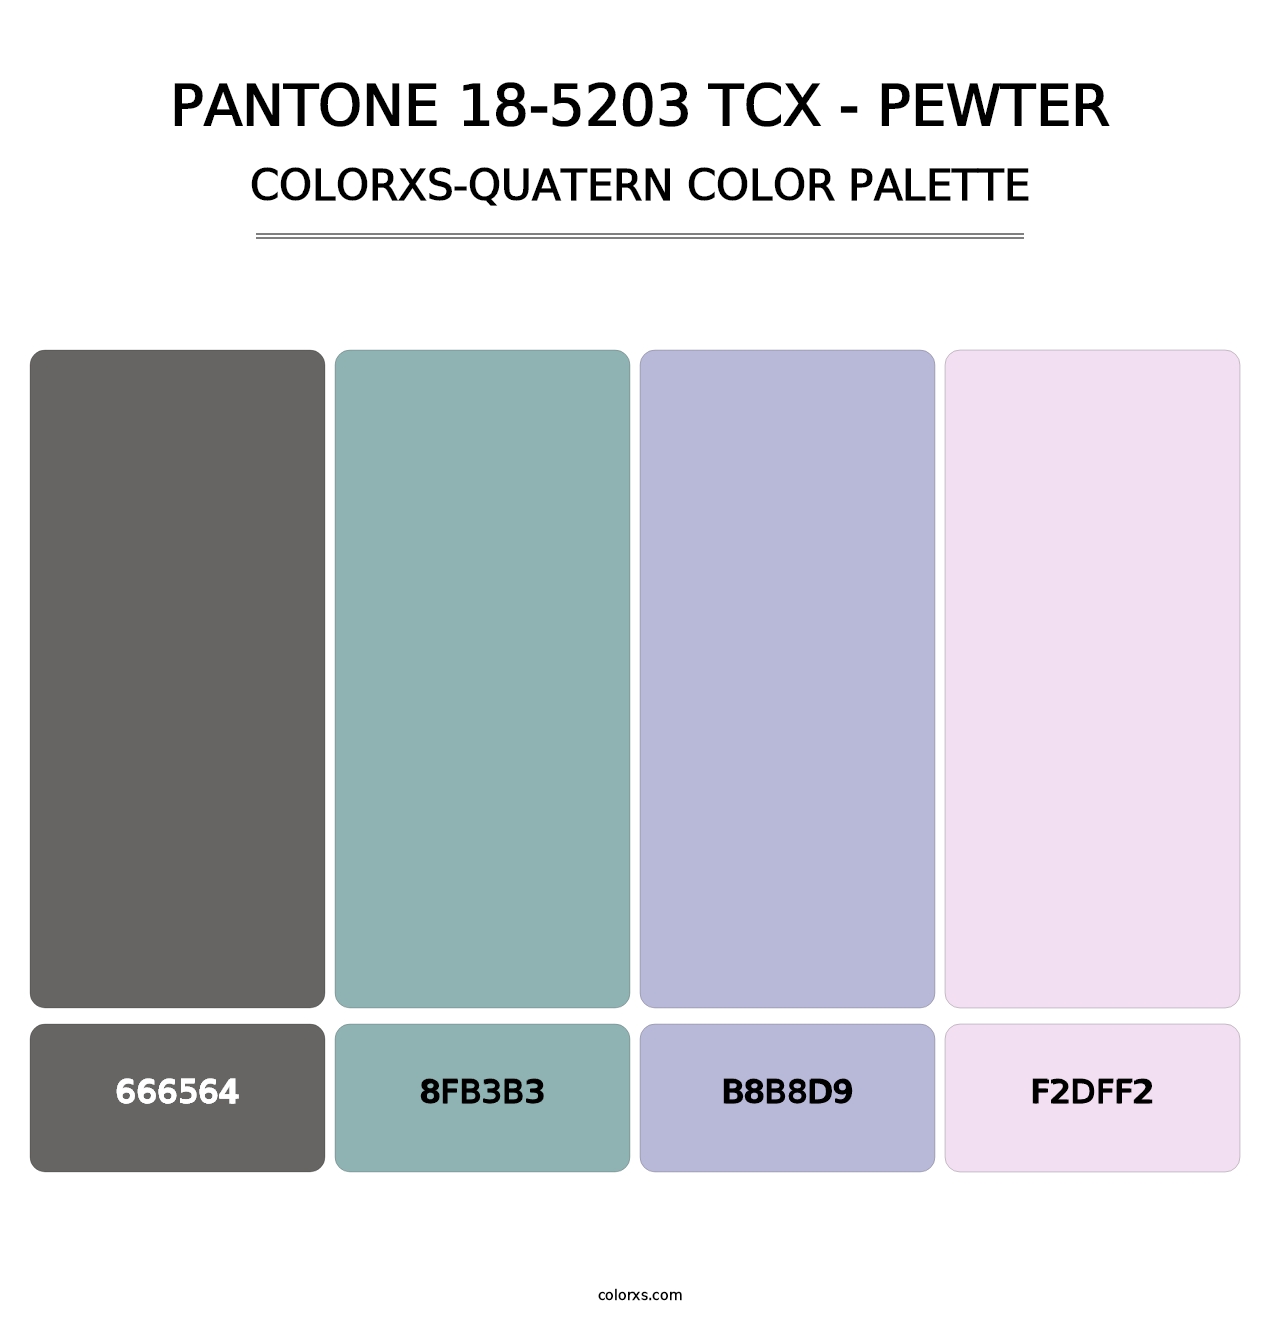 PANTONE 18-5203 TCX - Pewter - Colorxs Quatern Palette